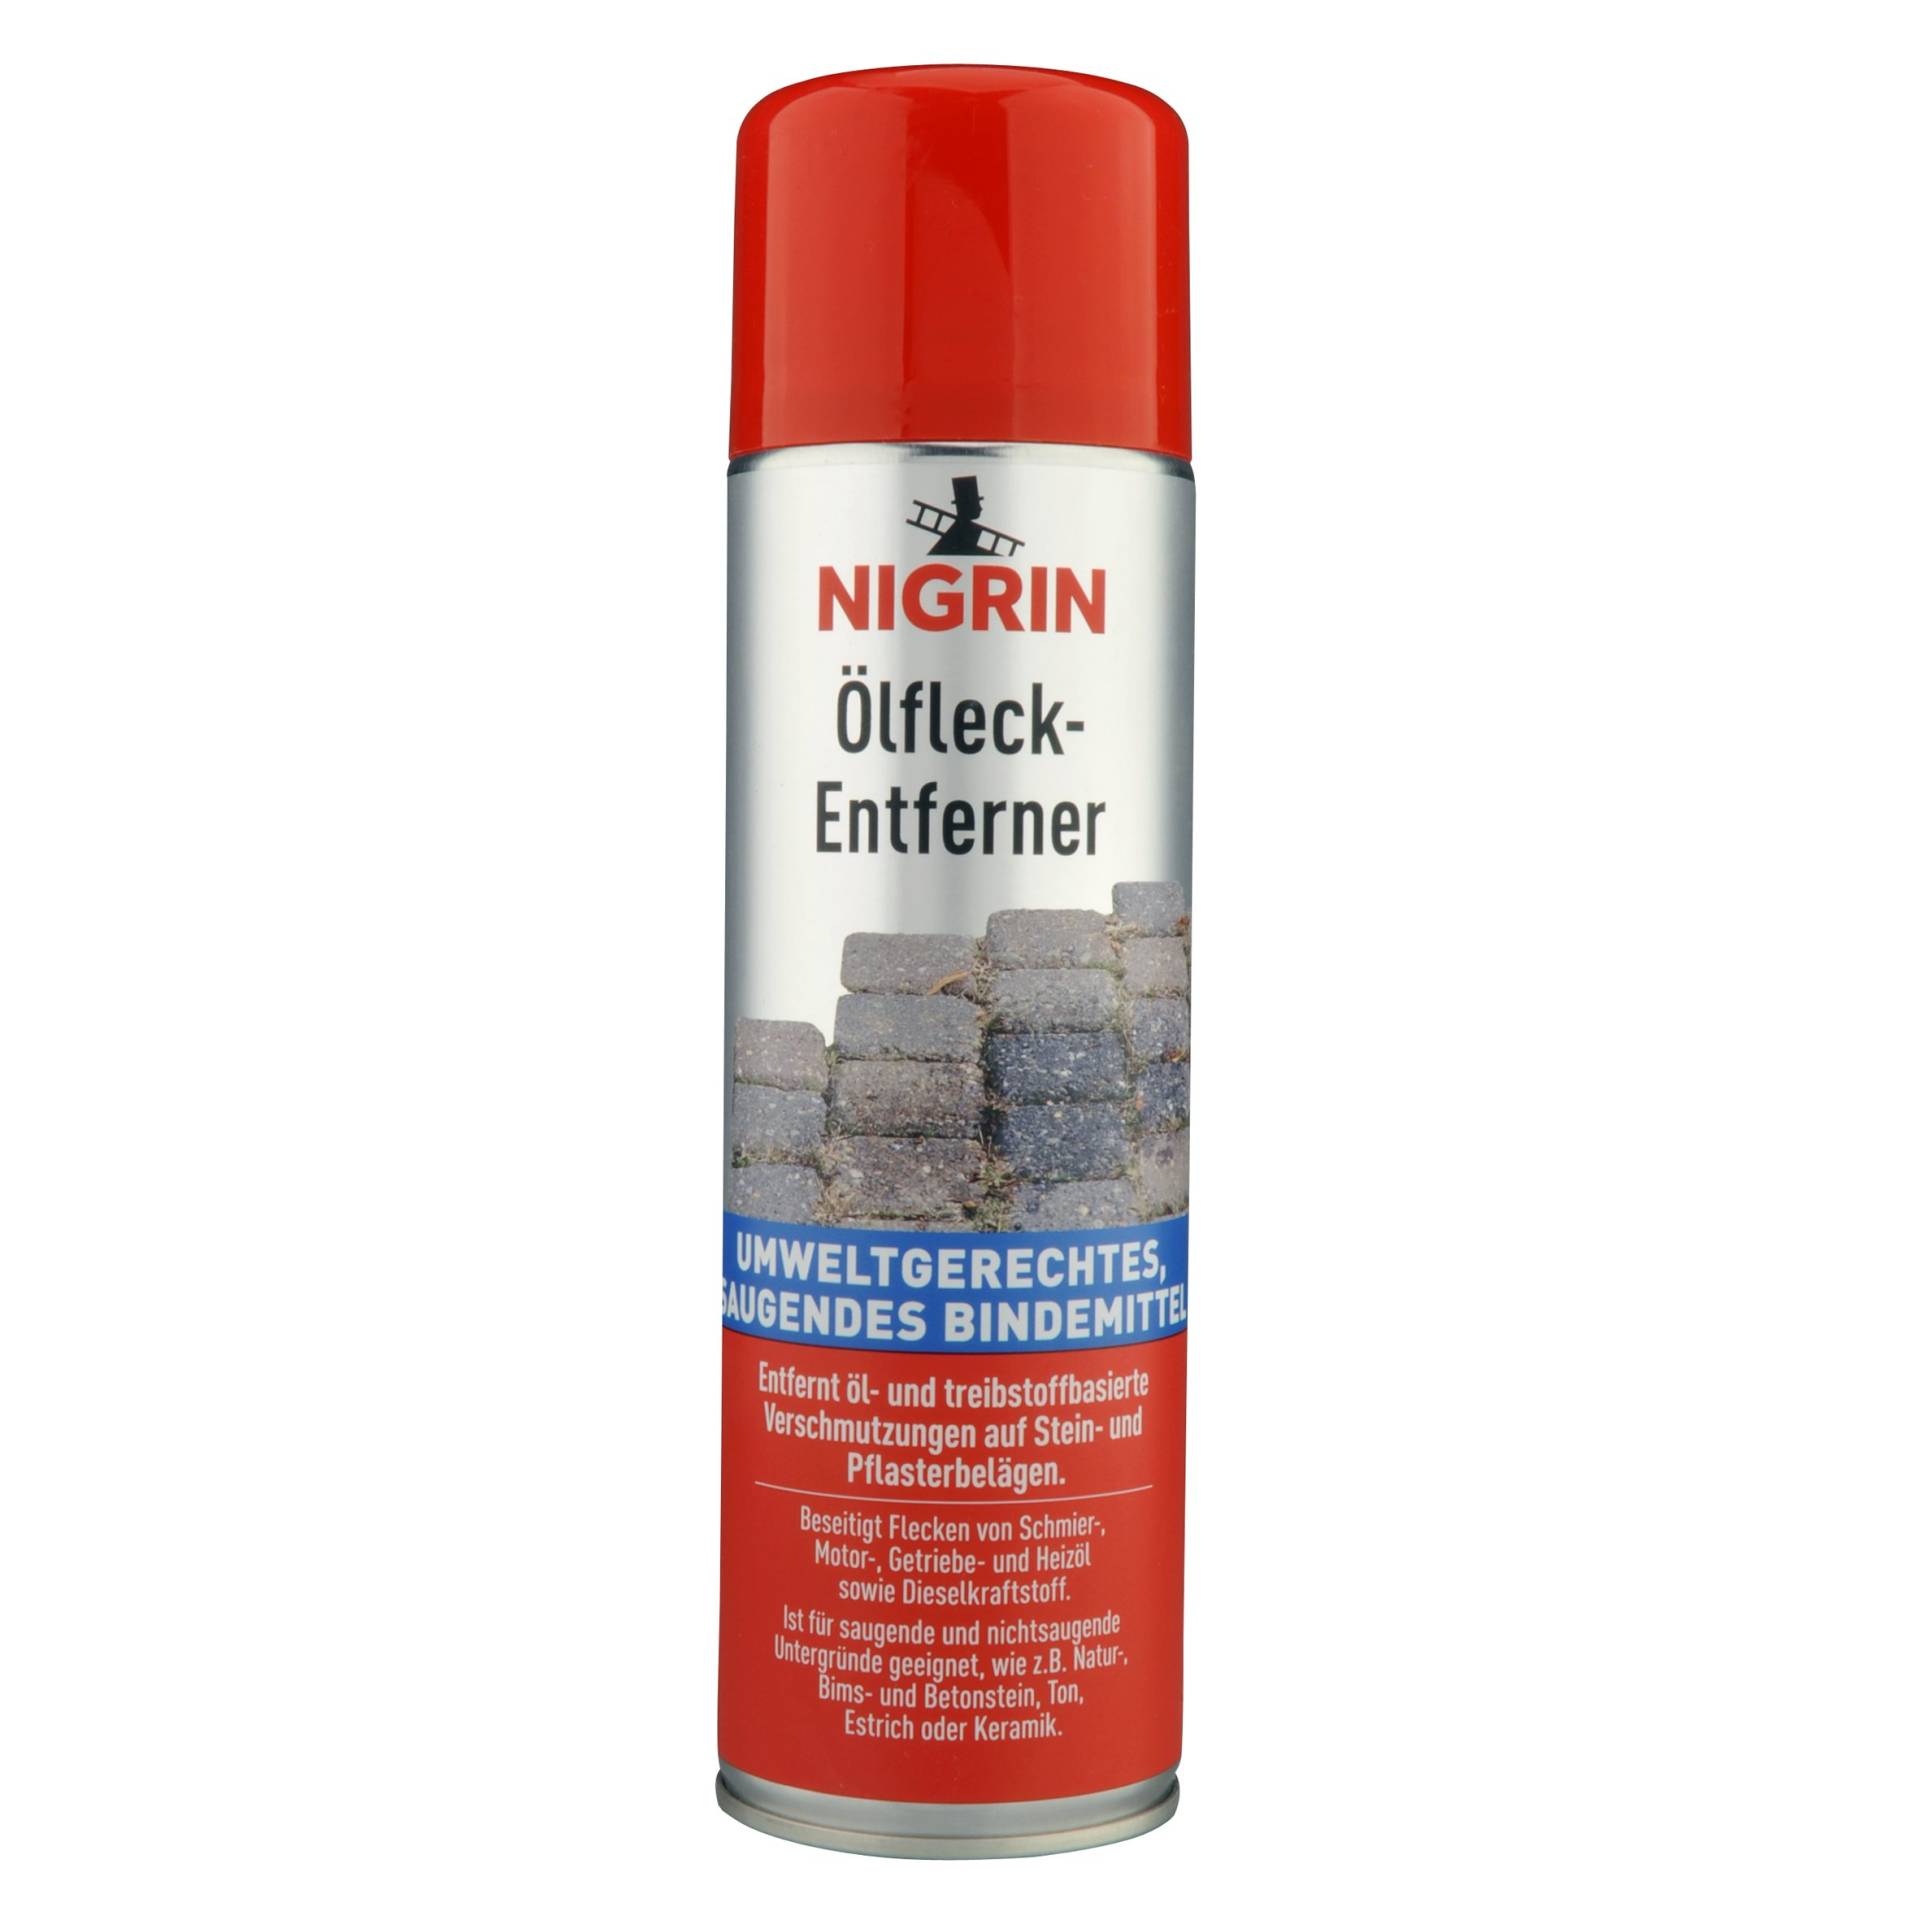 NIGRIN Ölfleck-Entferner, entfernt öl- und treibstoffbasierte Verschmutzungen, 500 ml von NIGRIN